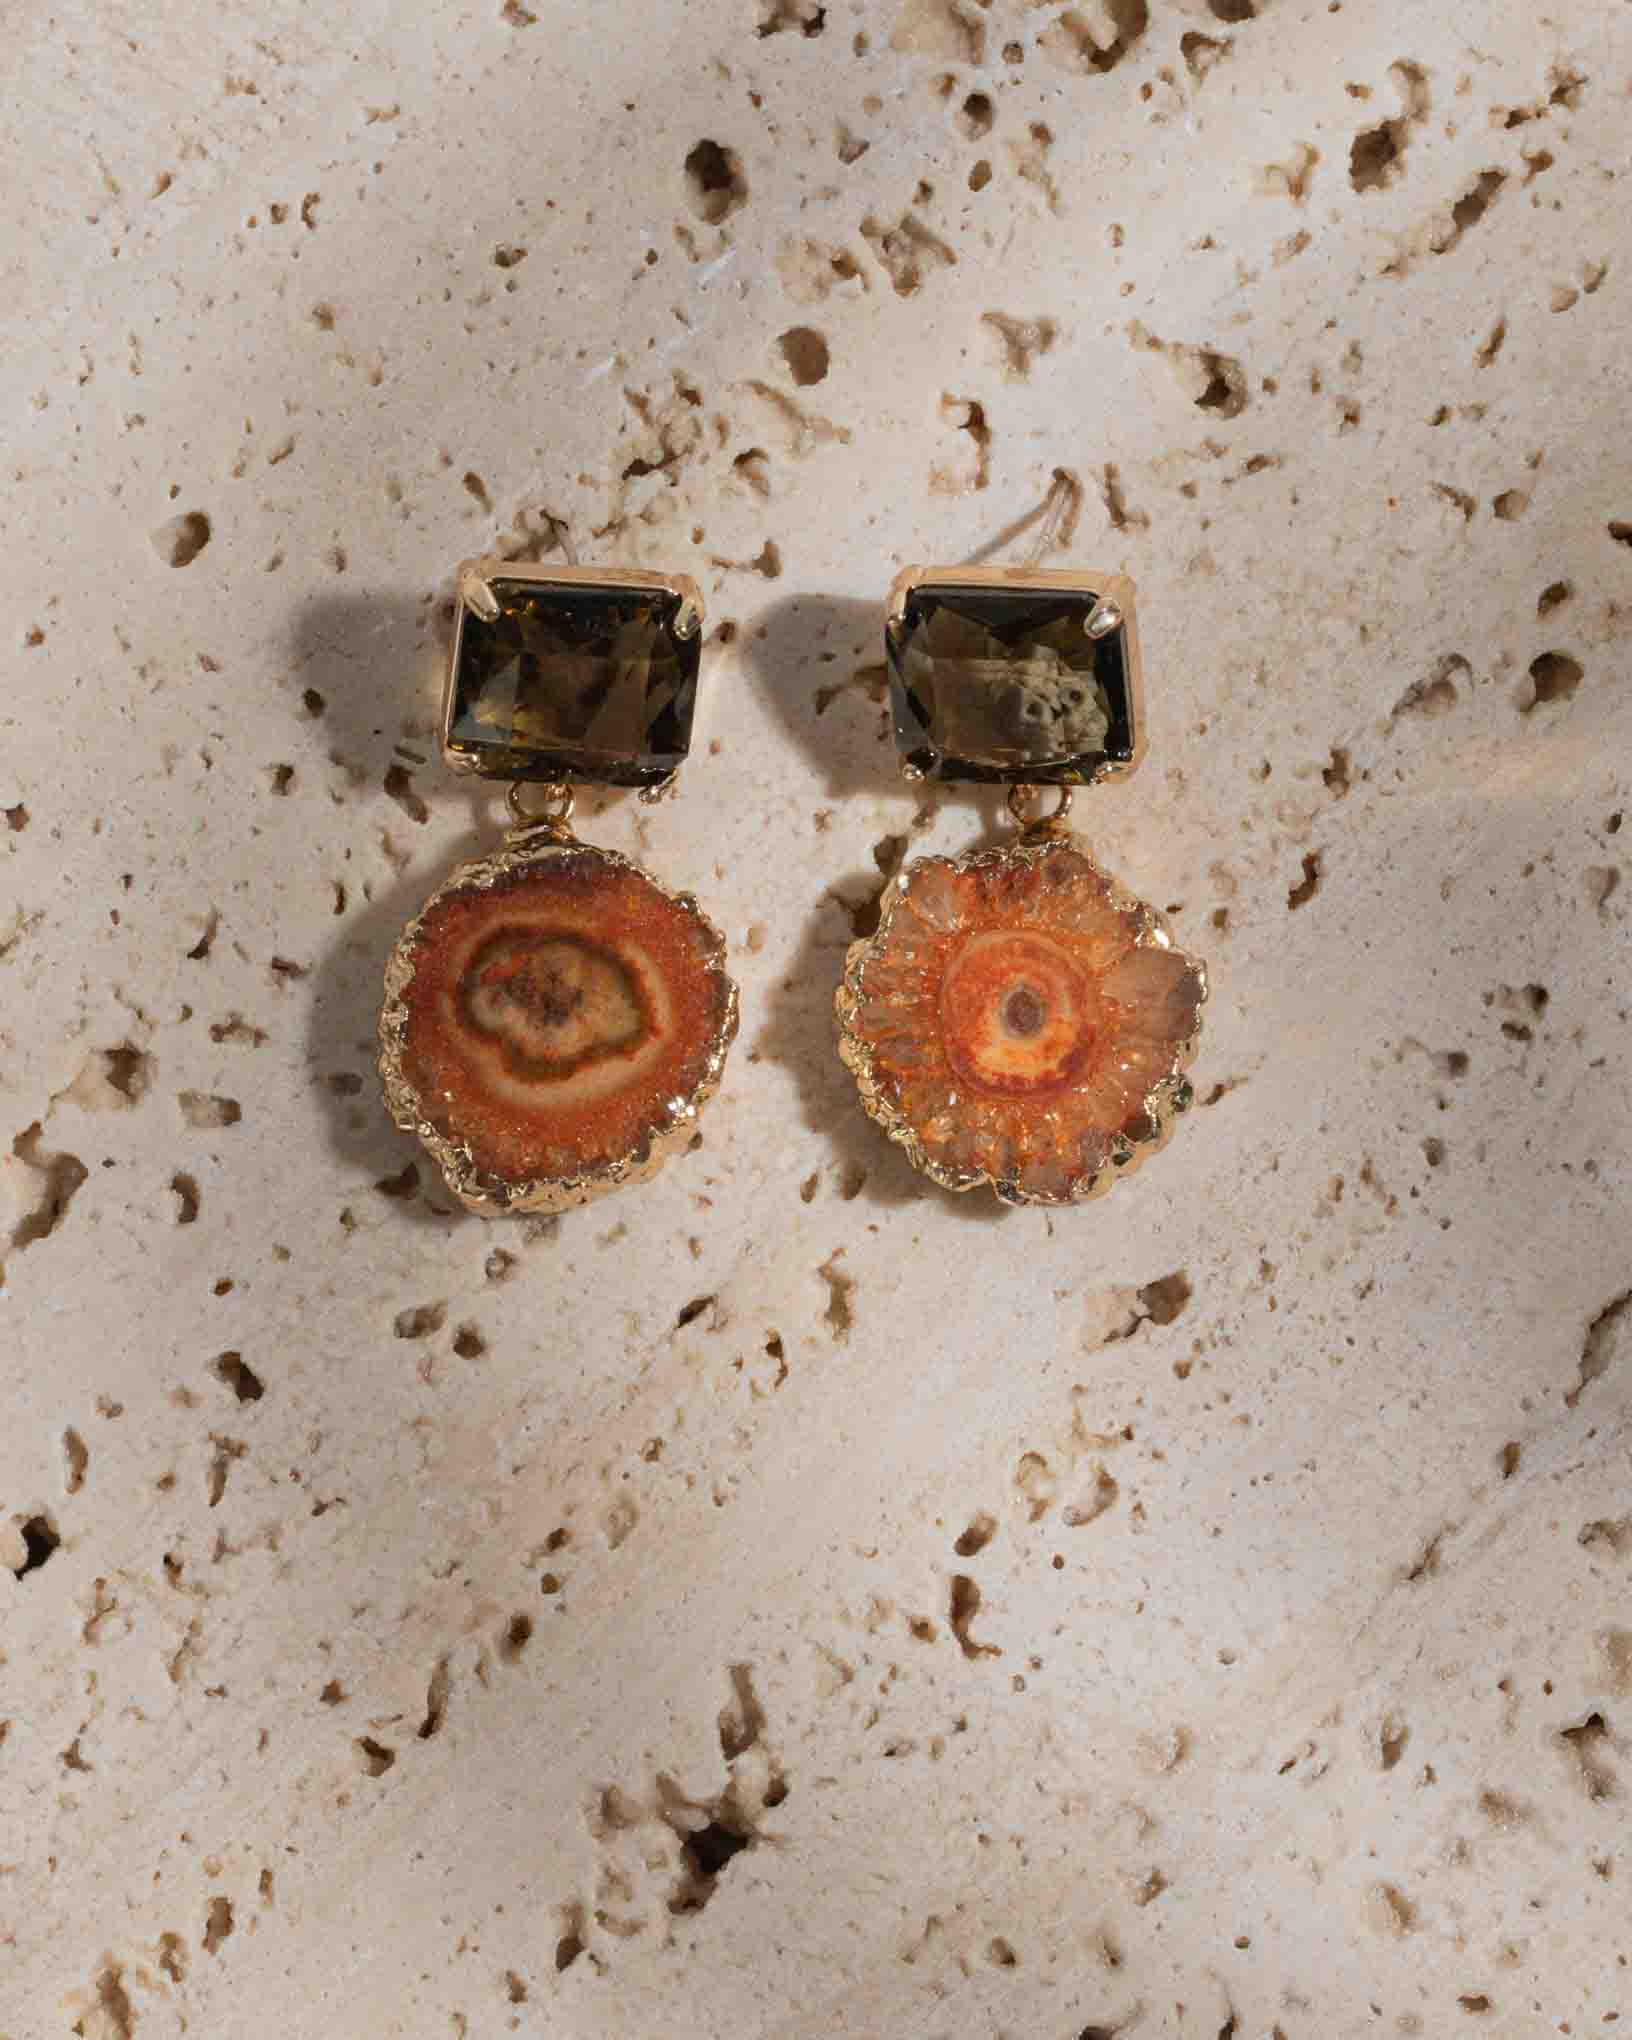 Ohrring Mercurio aus der Kollektion Galassia von Donna Rachele Jewelry